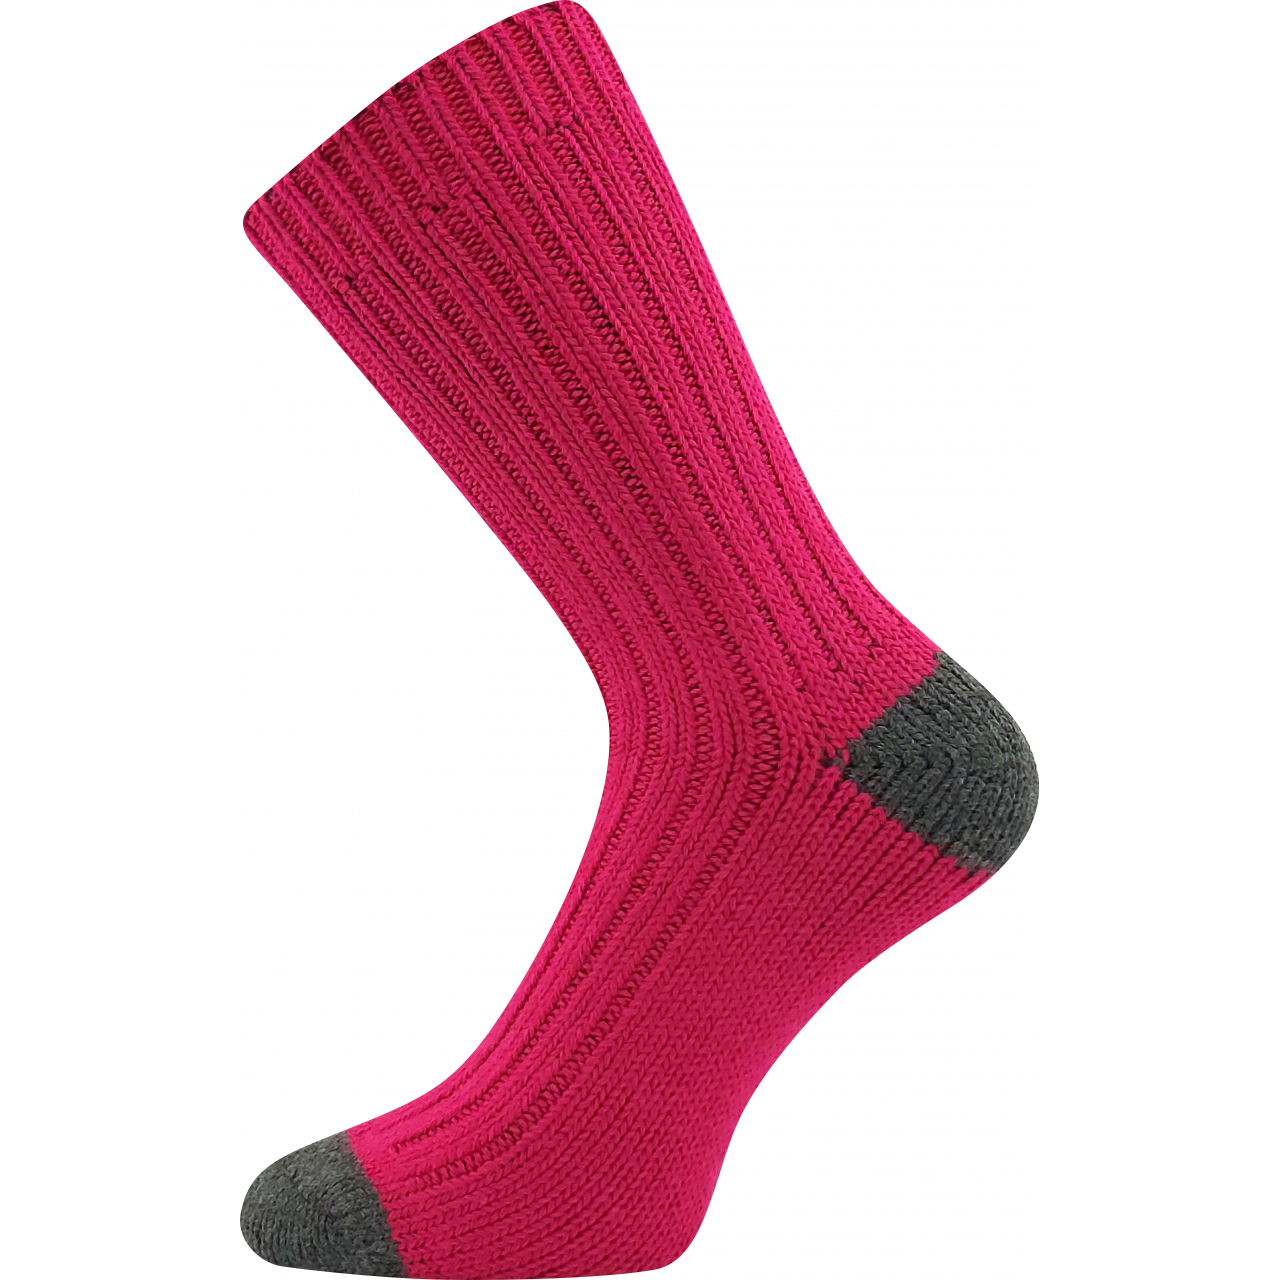 Ponožky dámské silné Voxx Marmolada - tmavě růžové, 35-38